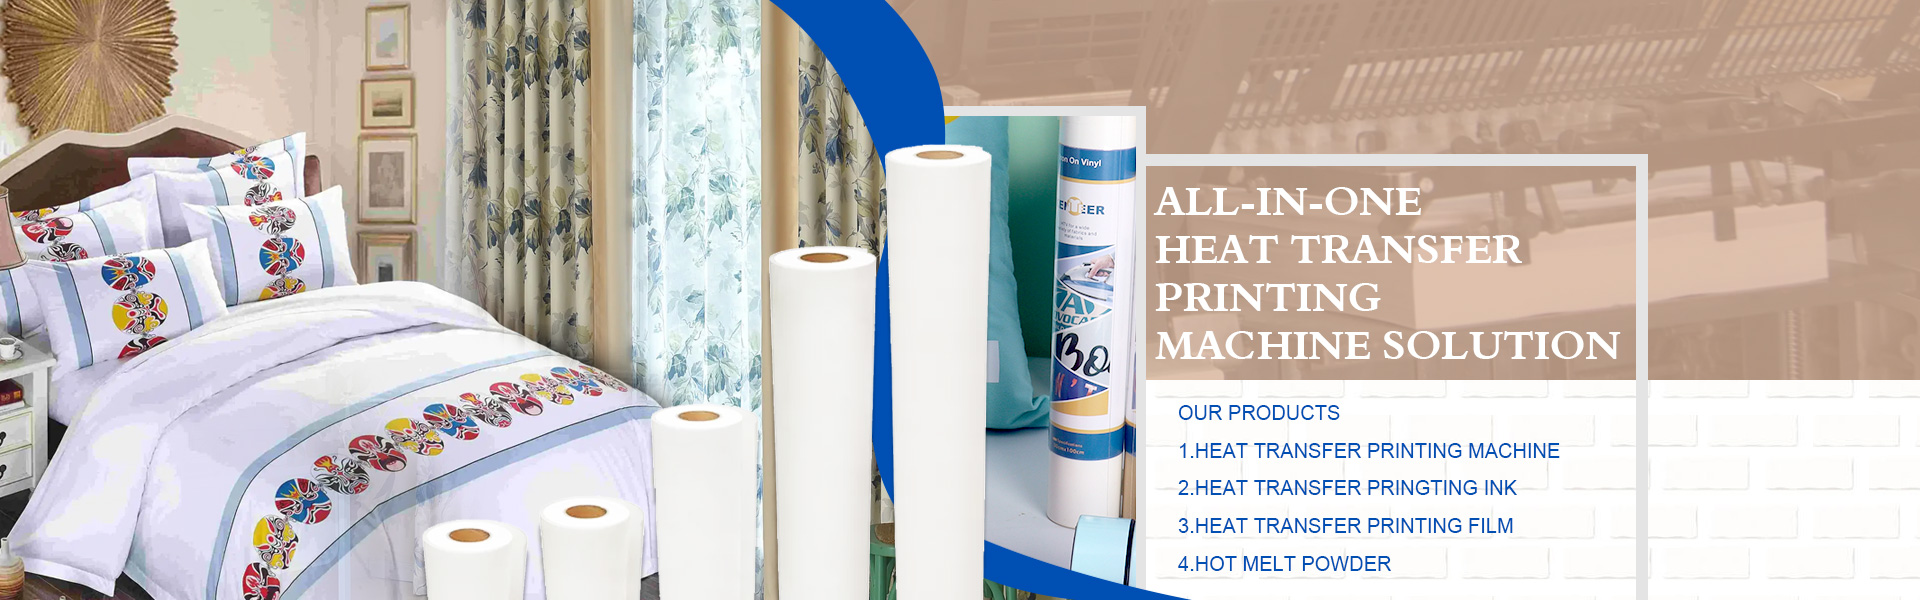 Warmteoverdracht papier, sublimatiepapier, digitaal printerpapier,Suzhou Huarong Paper Products Co., Ltd